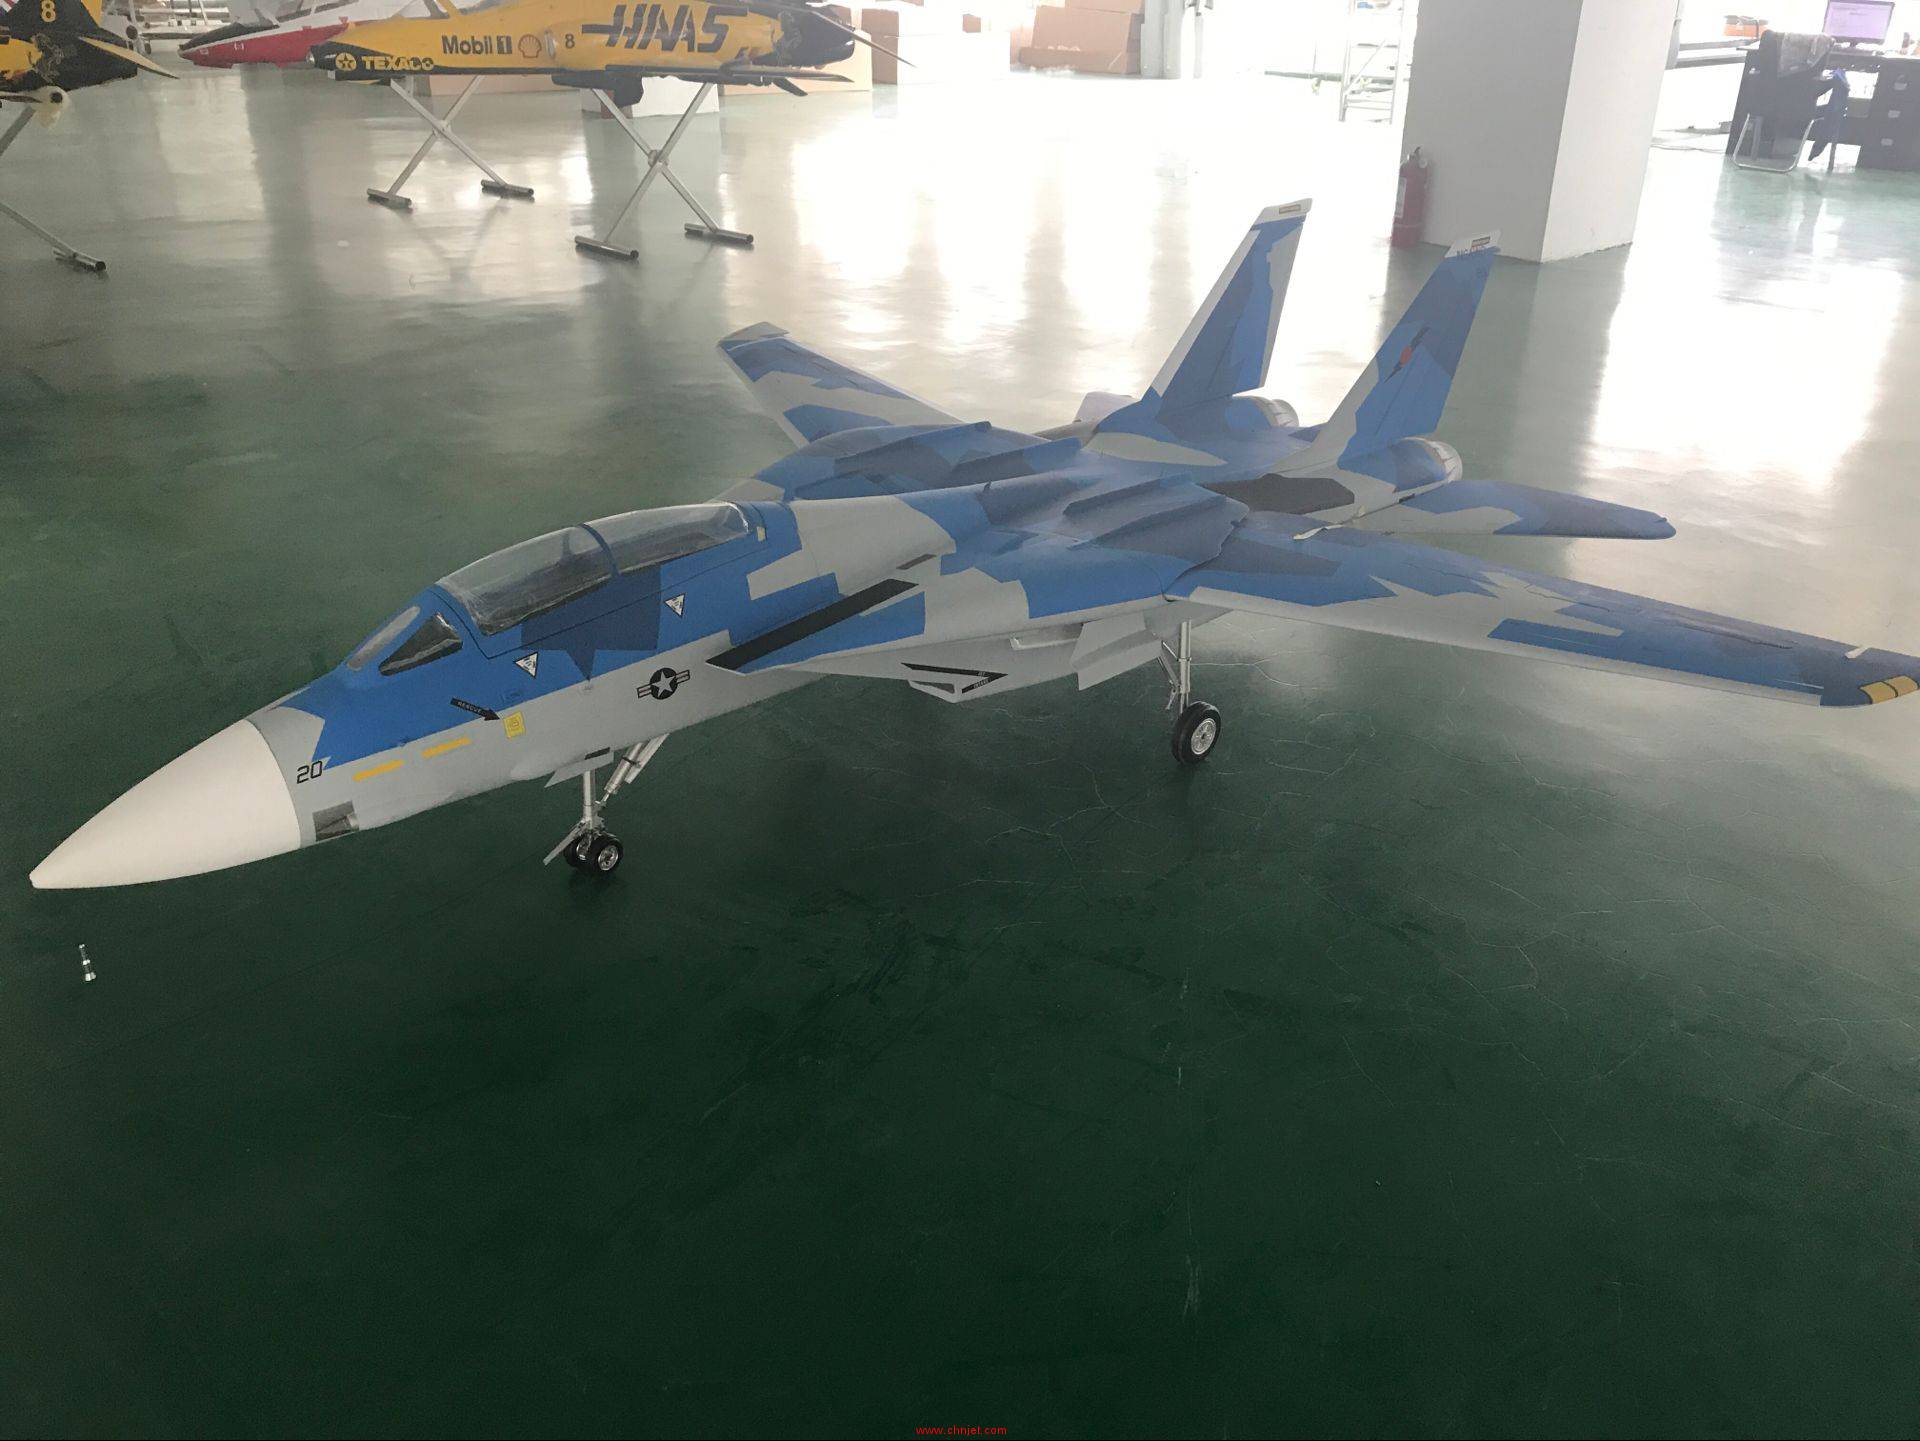 飞鹰最新的F14涡喷模型飞机